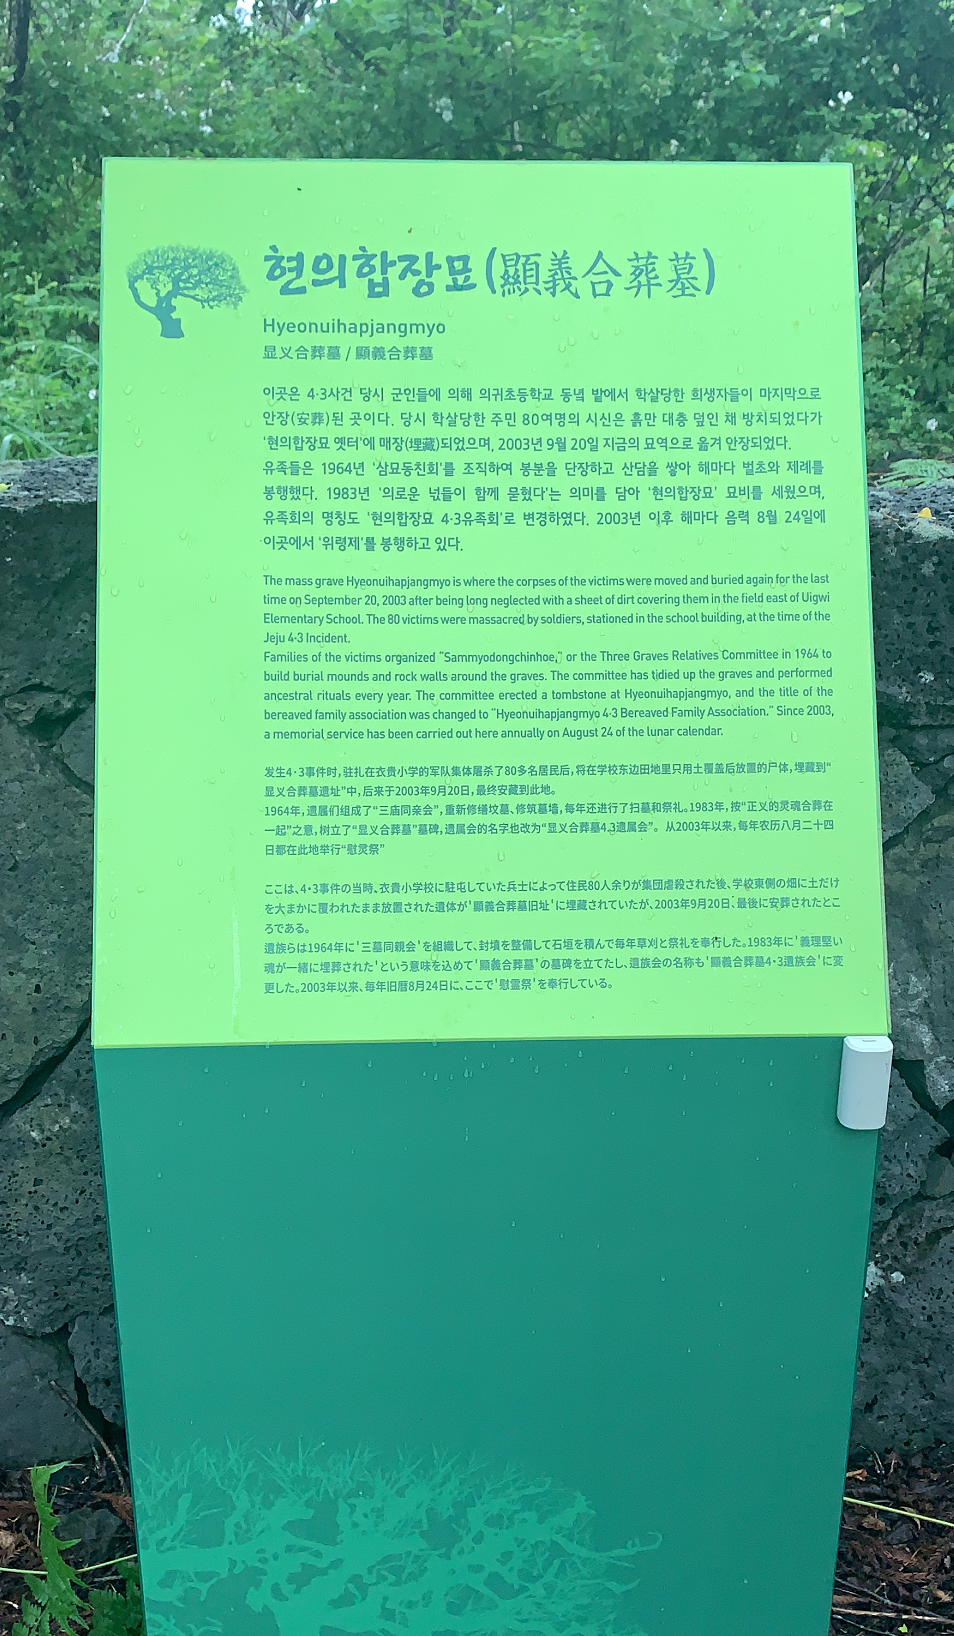 현의합장묘(신묘역) 안내판 시트지가 교체되어 내용을 알아볼 수 있게 되었다.  (2021년 5월 11일 촬영)